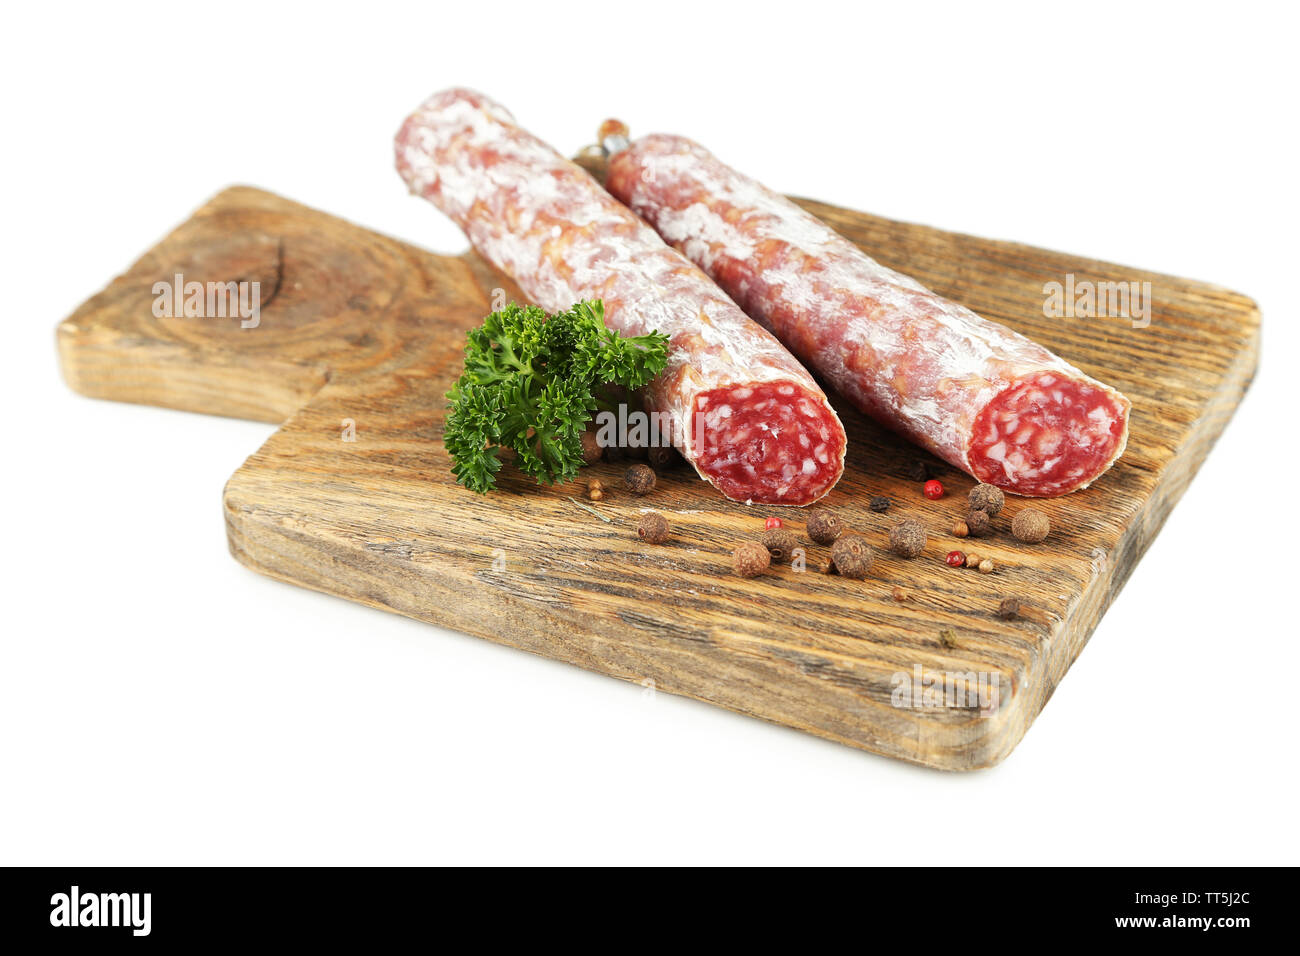 sausage Out Cut & (salami) Pictures Venison Stock Alamy Images -